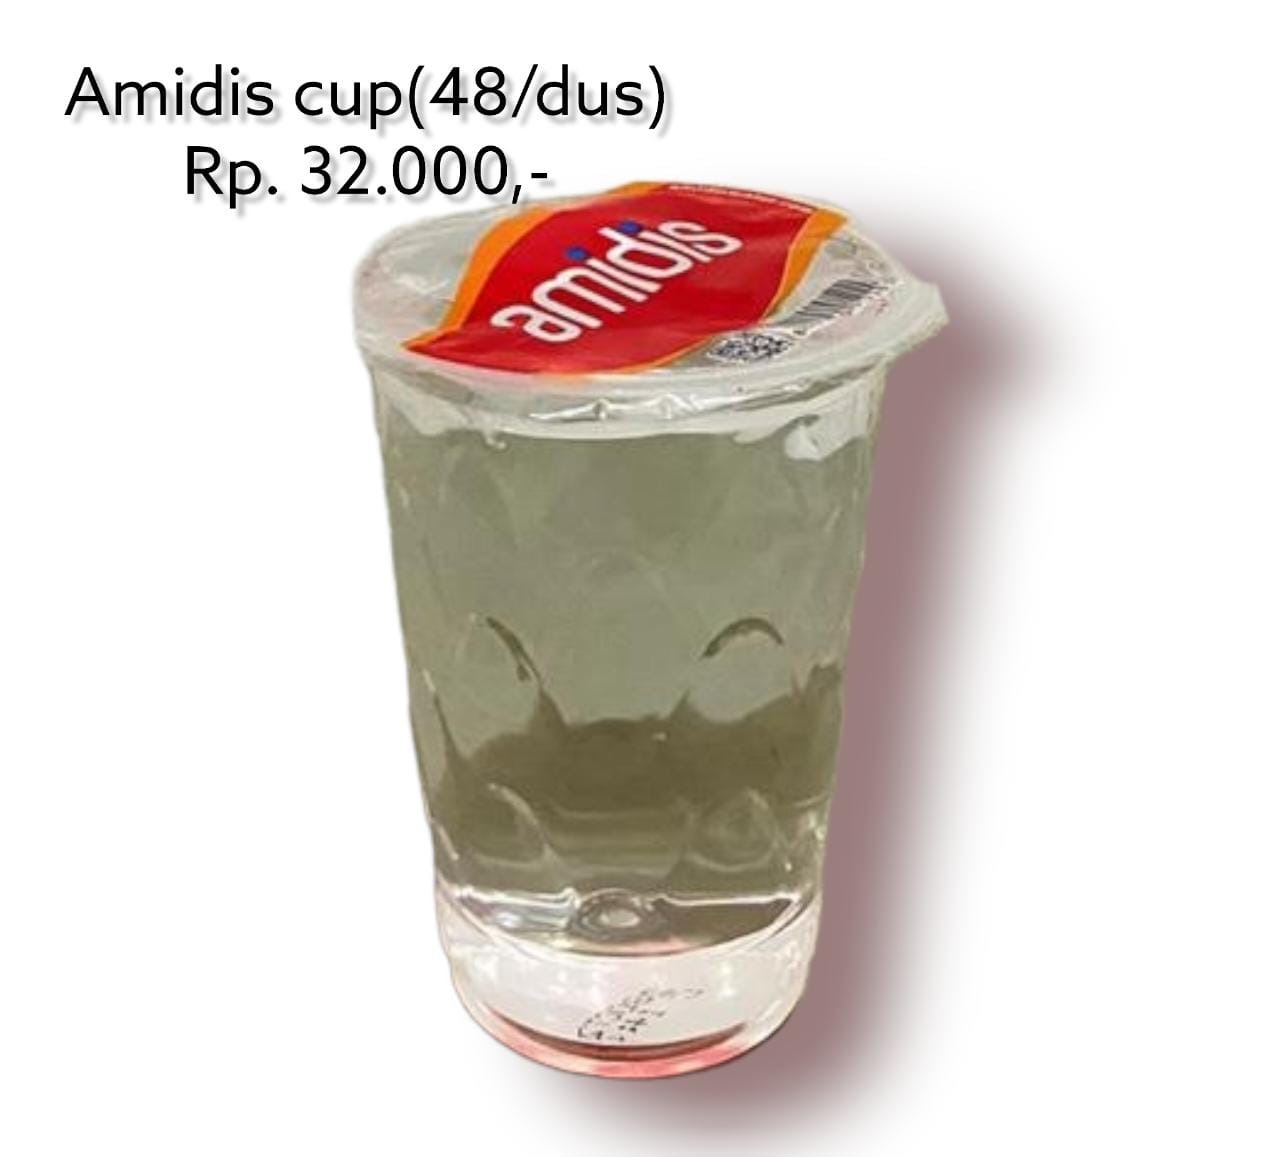 Amidis Cup